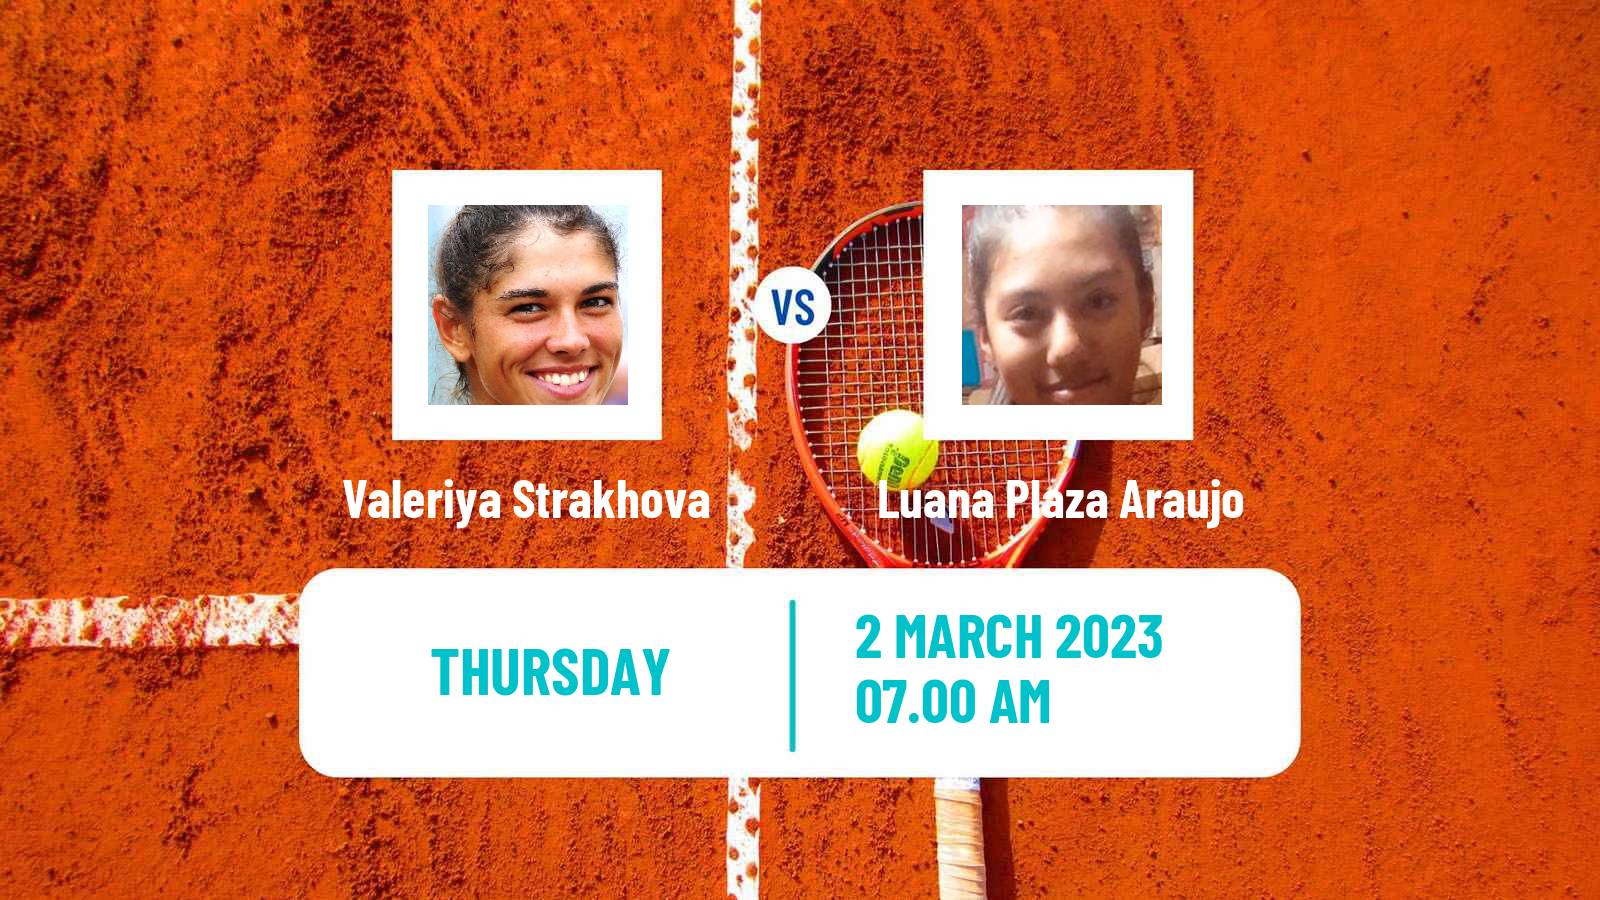 Tennis ITF Tournaments Valeriya Strakhova - Luana Plaza Araujo